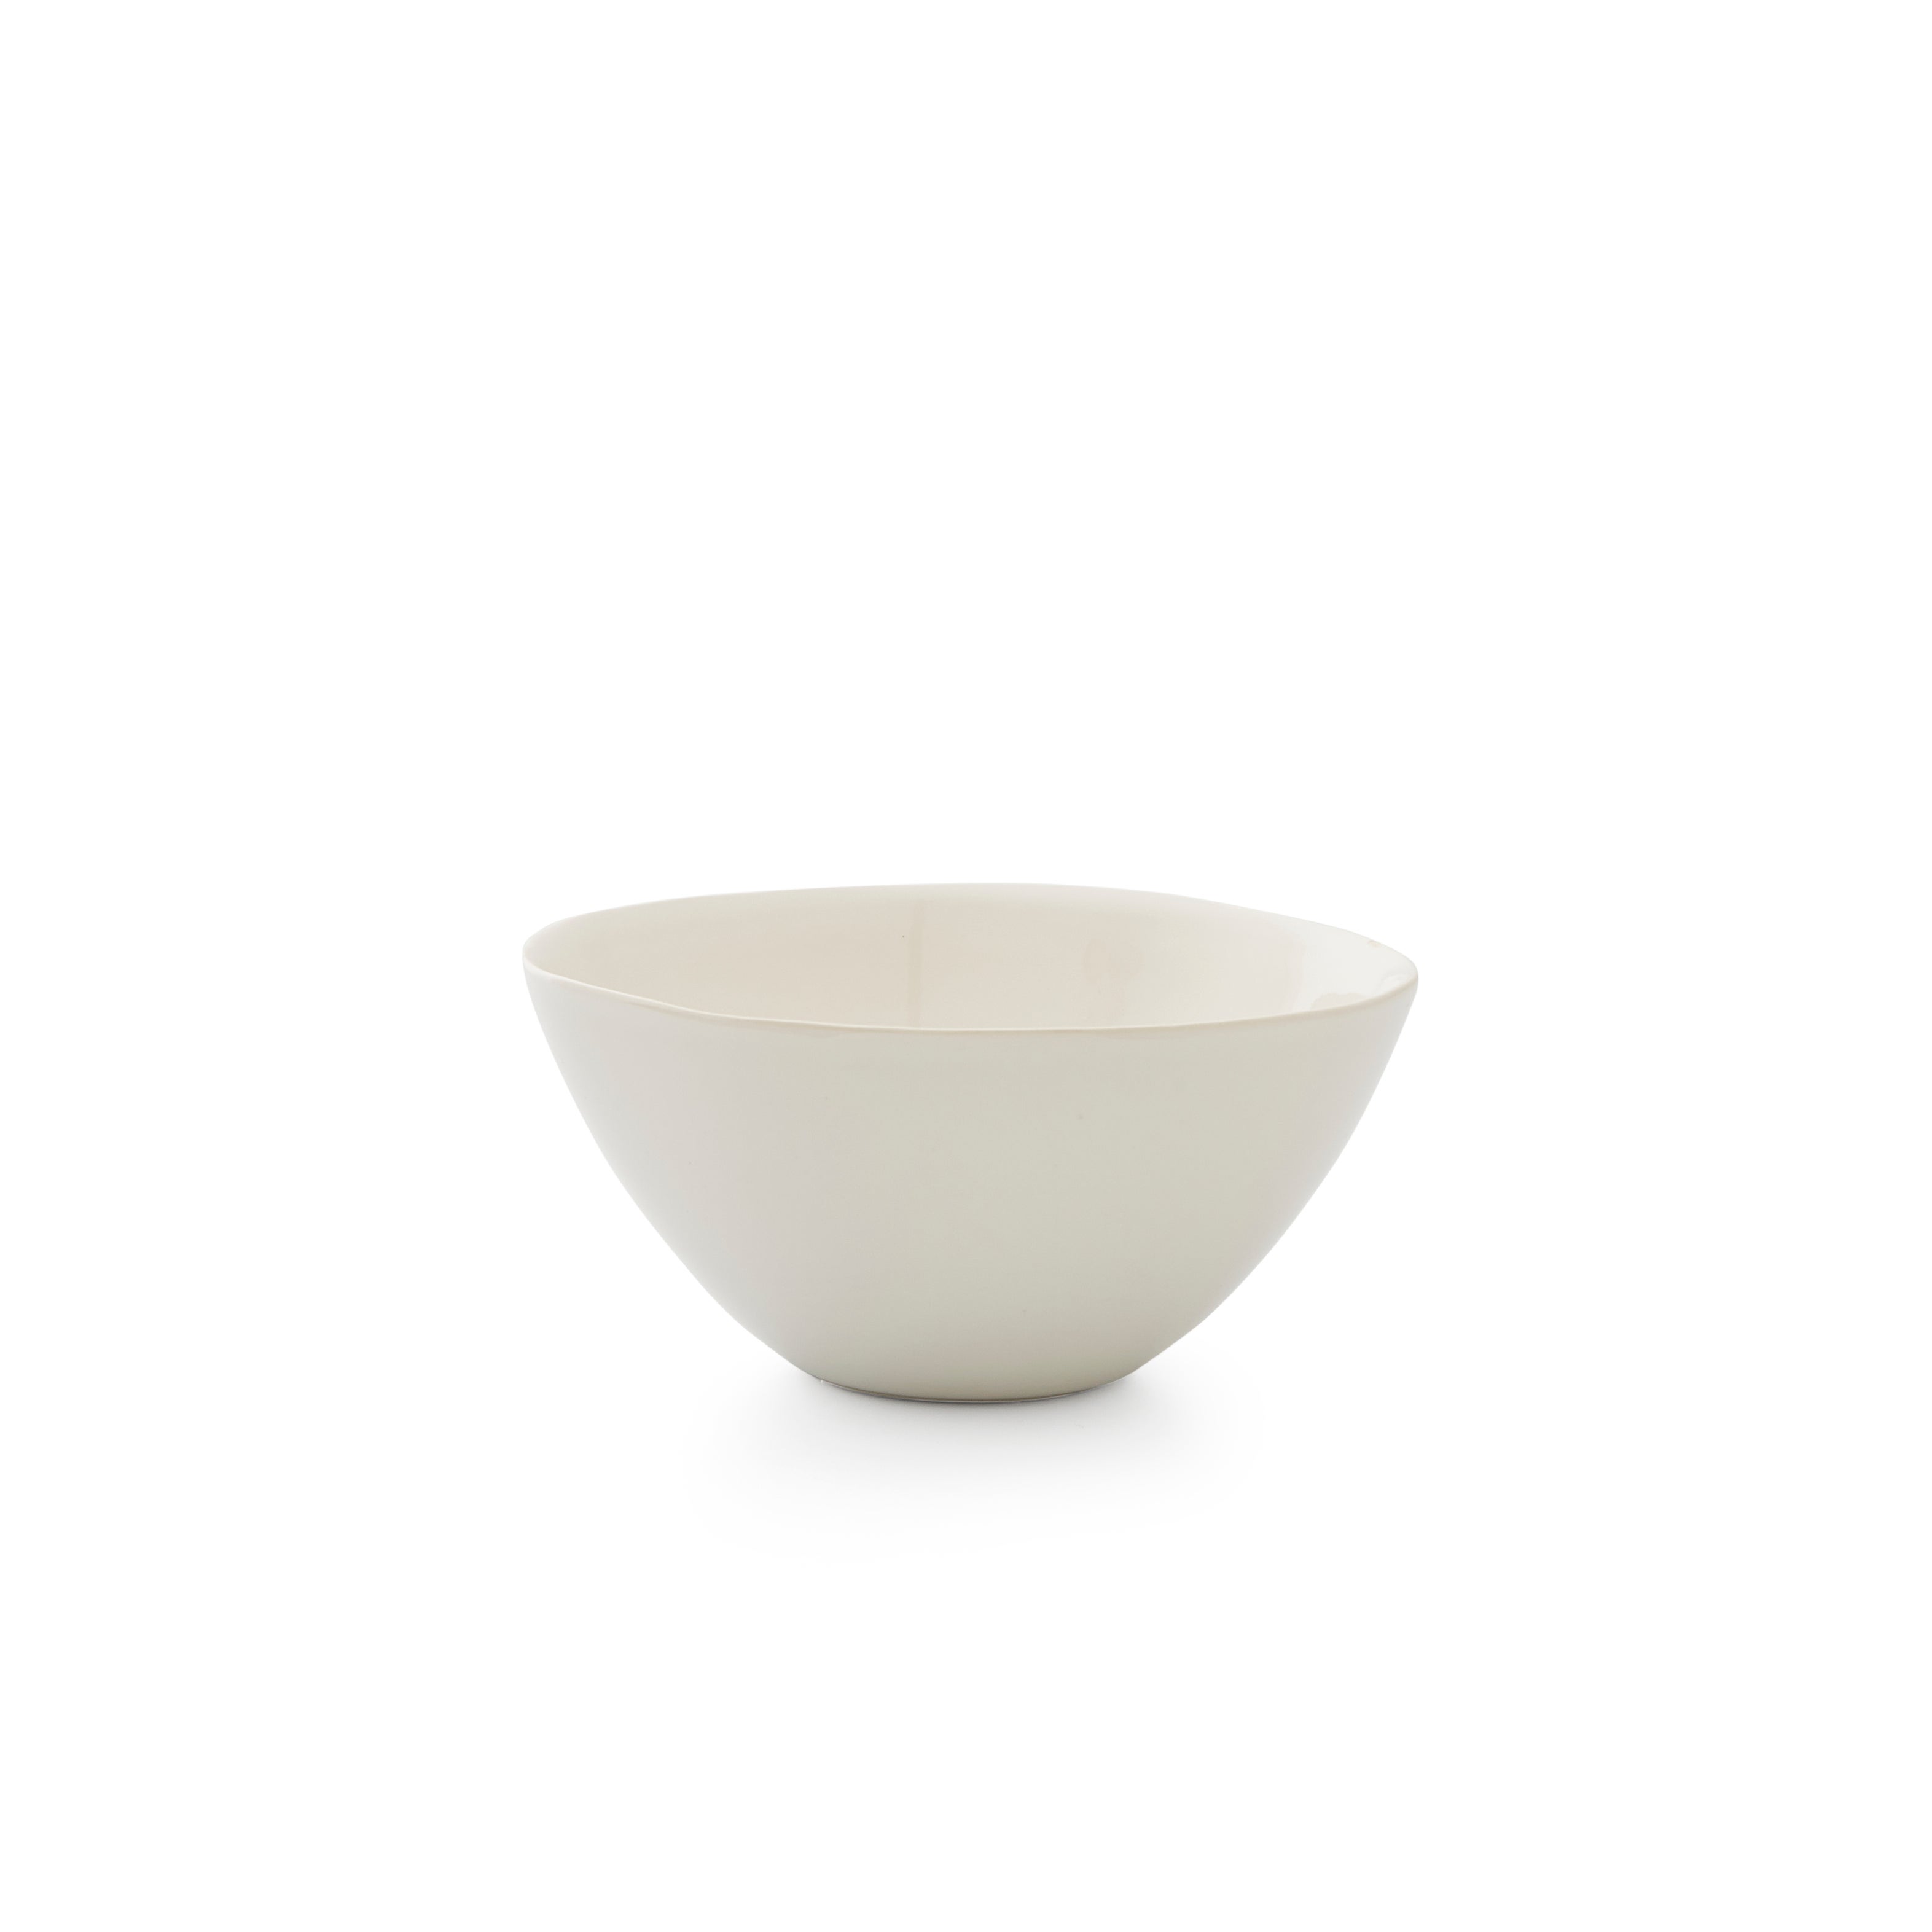 Sophie Conran For Portmeirion Set Of 4 Medium All Purpose Bowls White